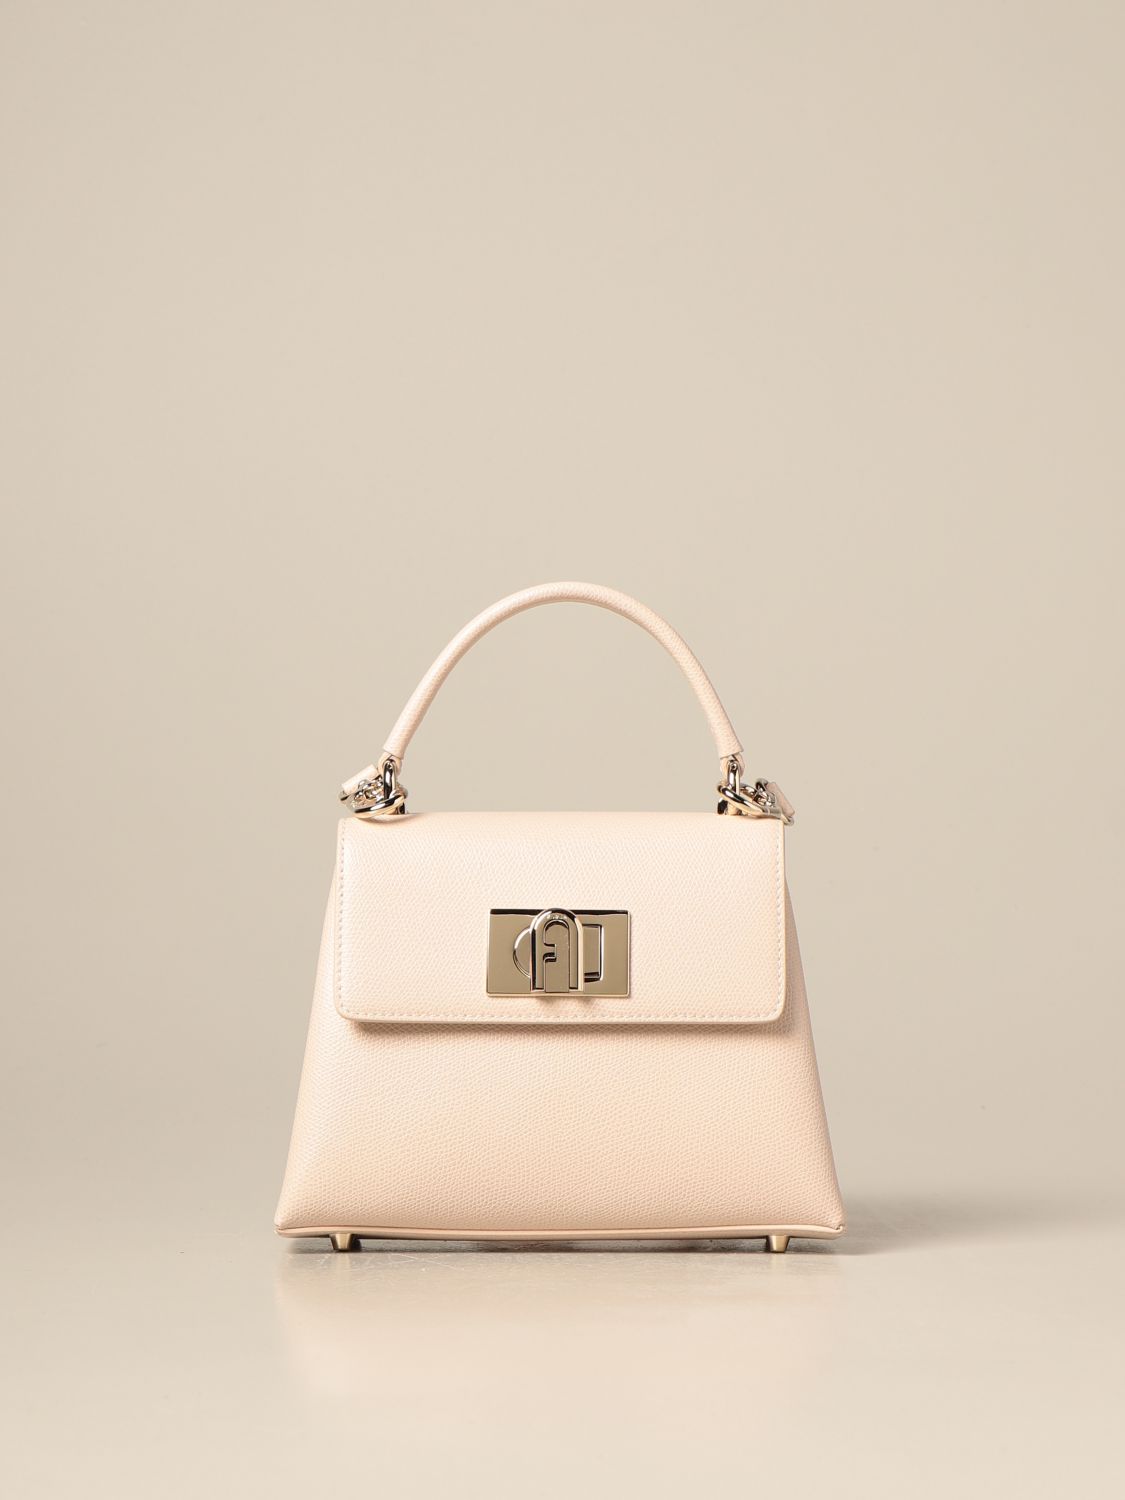 FURLA: 1927 bag in grained leather - Blush Pink | Furla shoulder bag ...